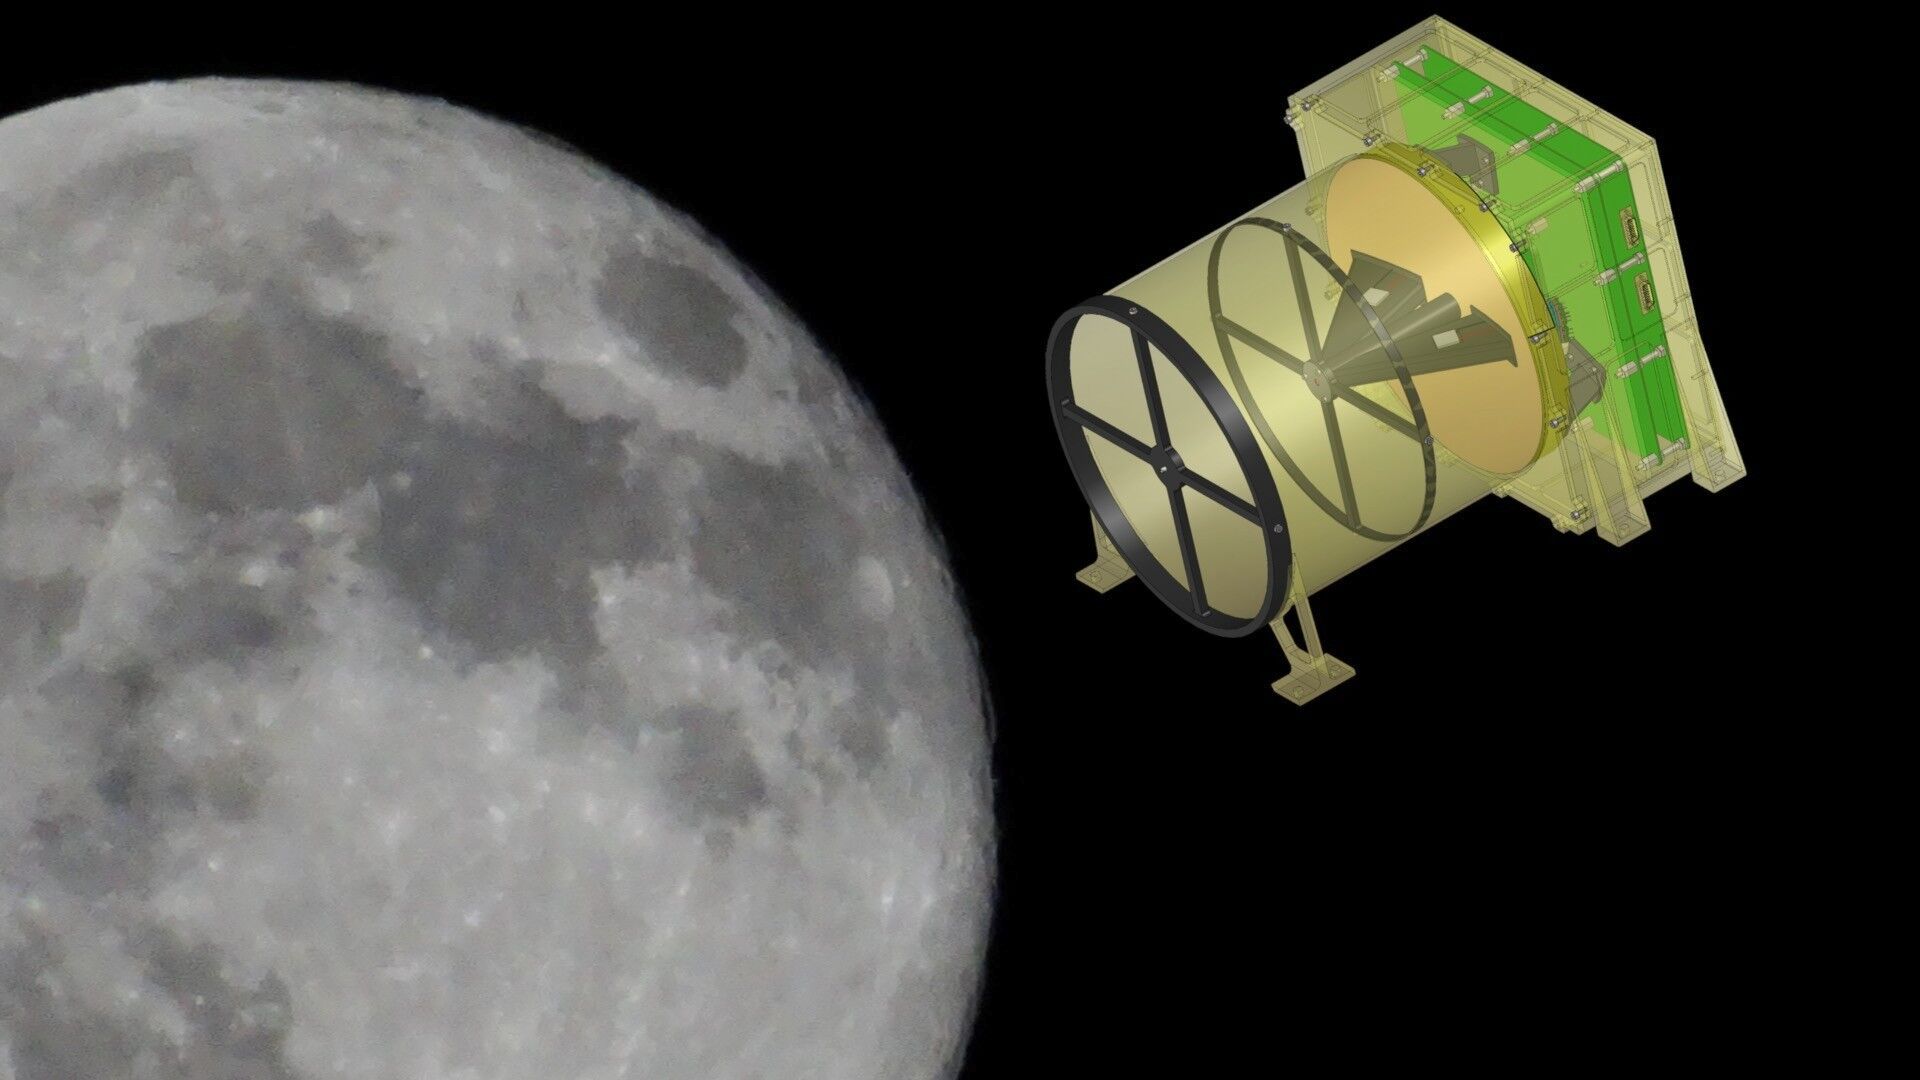 Polscy naukowcy chcą przeskanować Księżyc. Ambitna misja może dać wiele korzyści